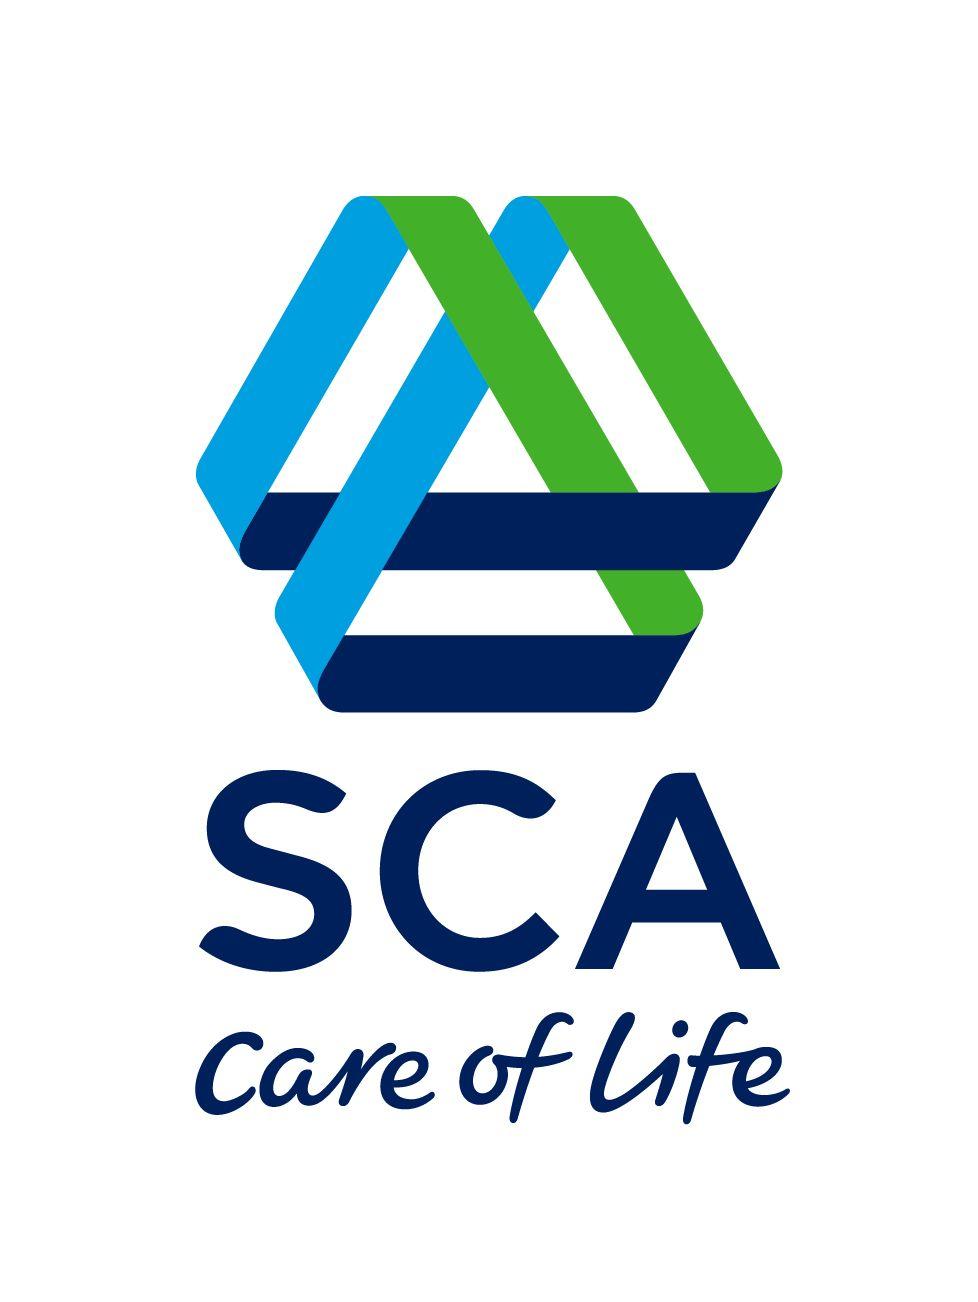 SCA Logo - Image - SCA logo.jpg | Logopedia | FANDOM powered by Wikia